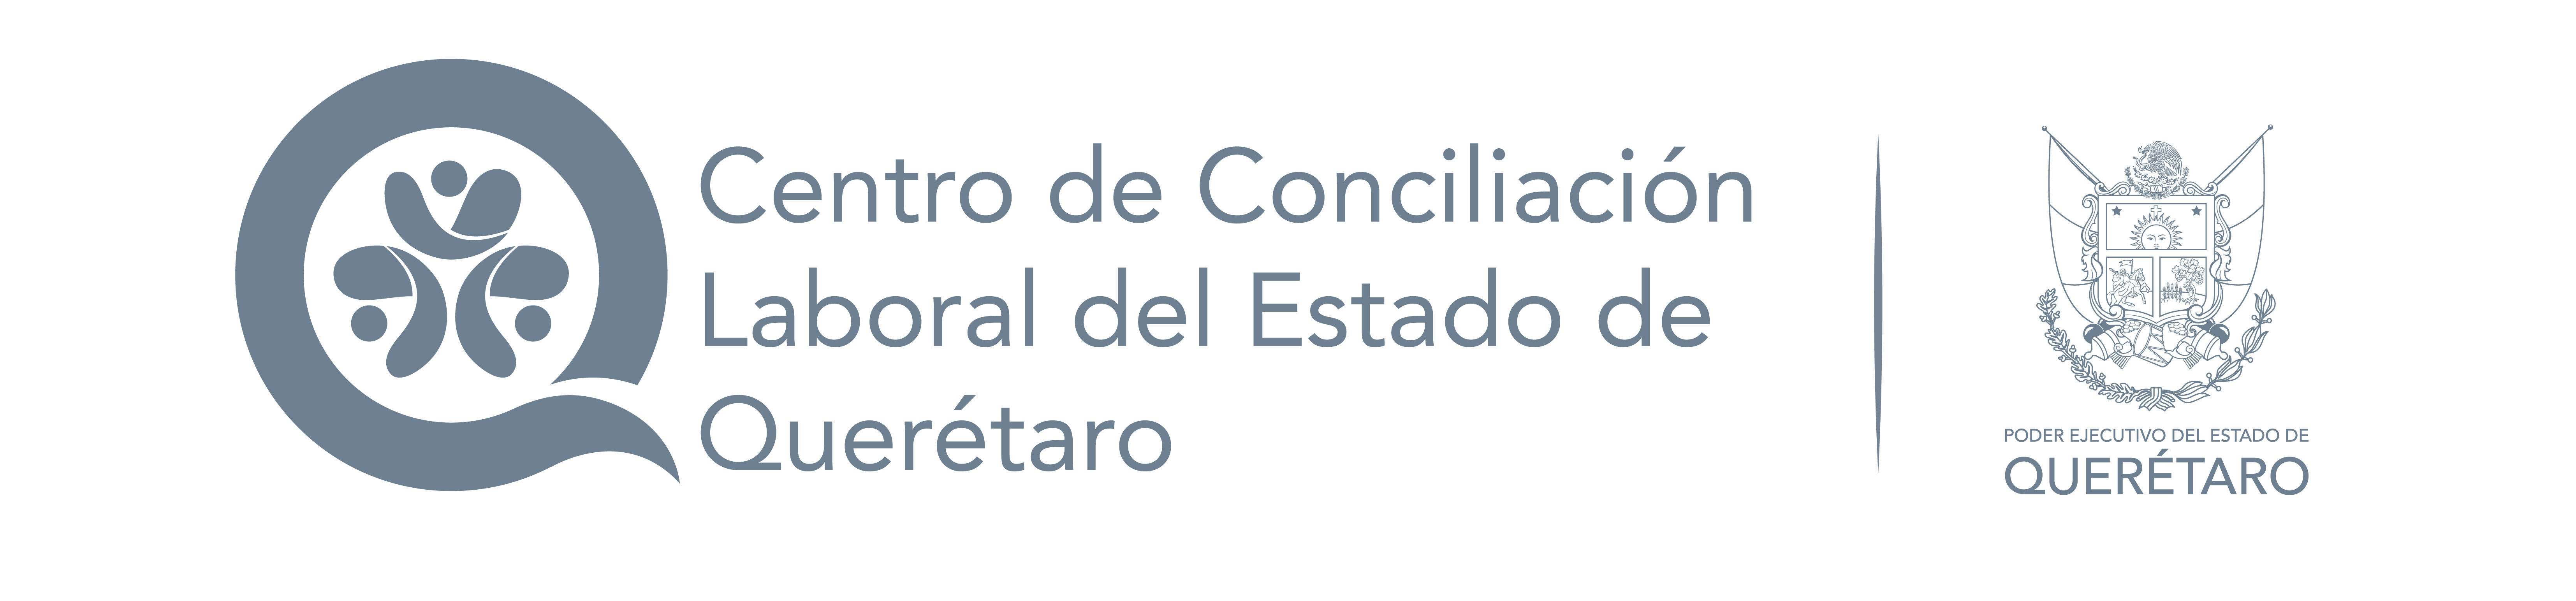 Centro de Conciliación Laboral del Estado de Querétaro 